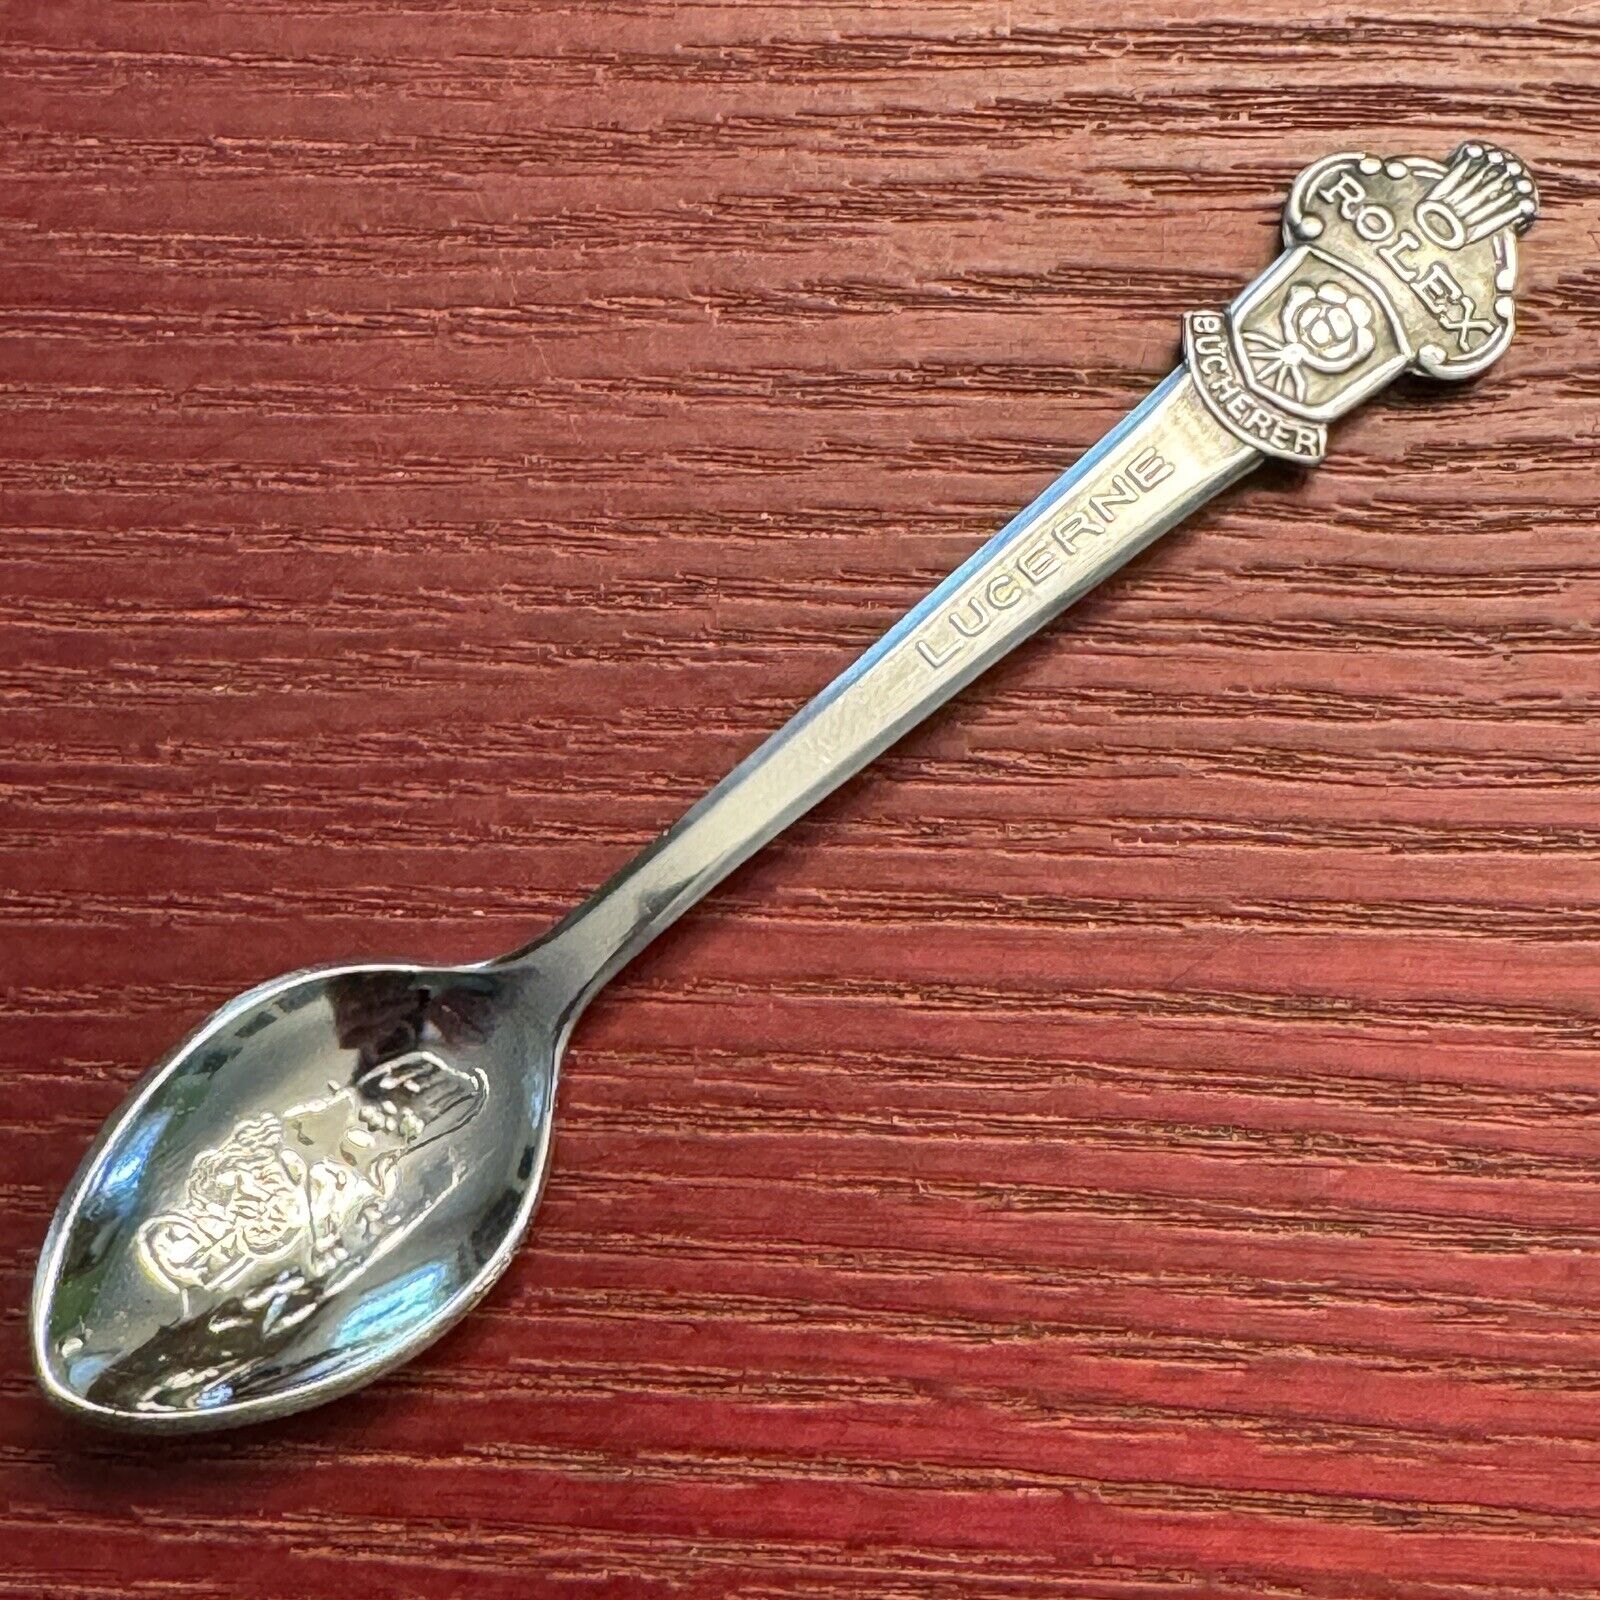 Vintage Rolex Souvenir Spoon Bucherer of Switzerland